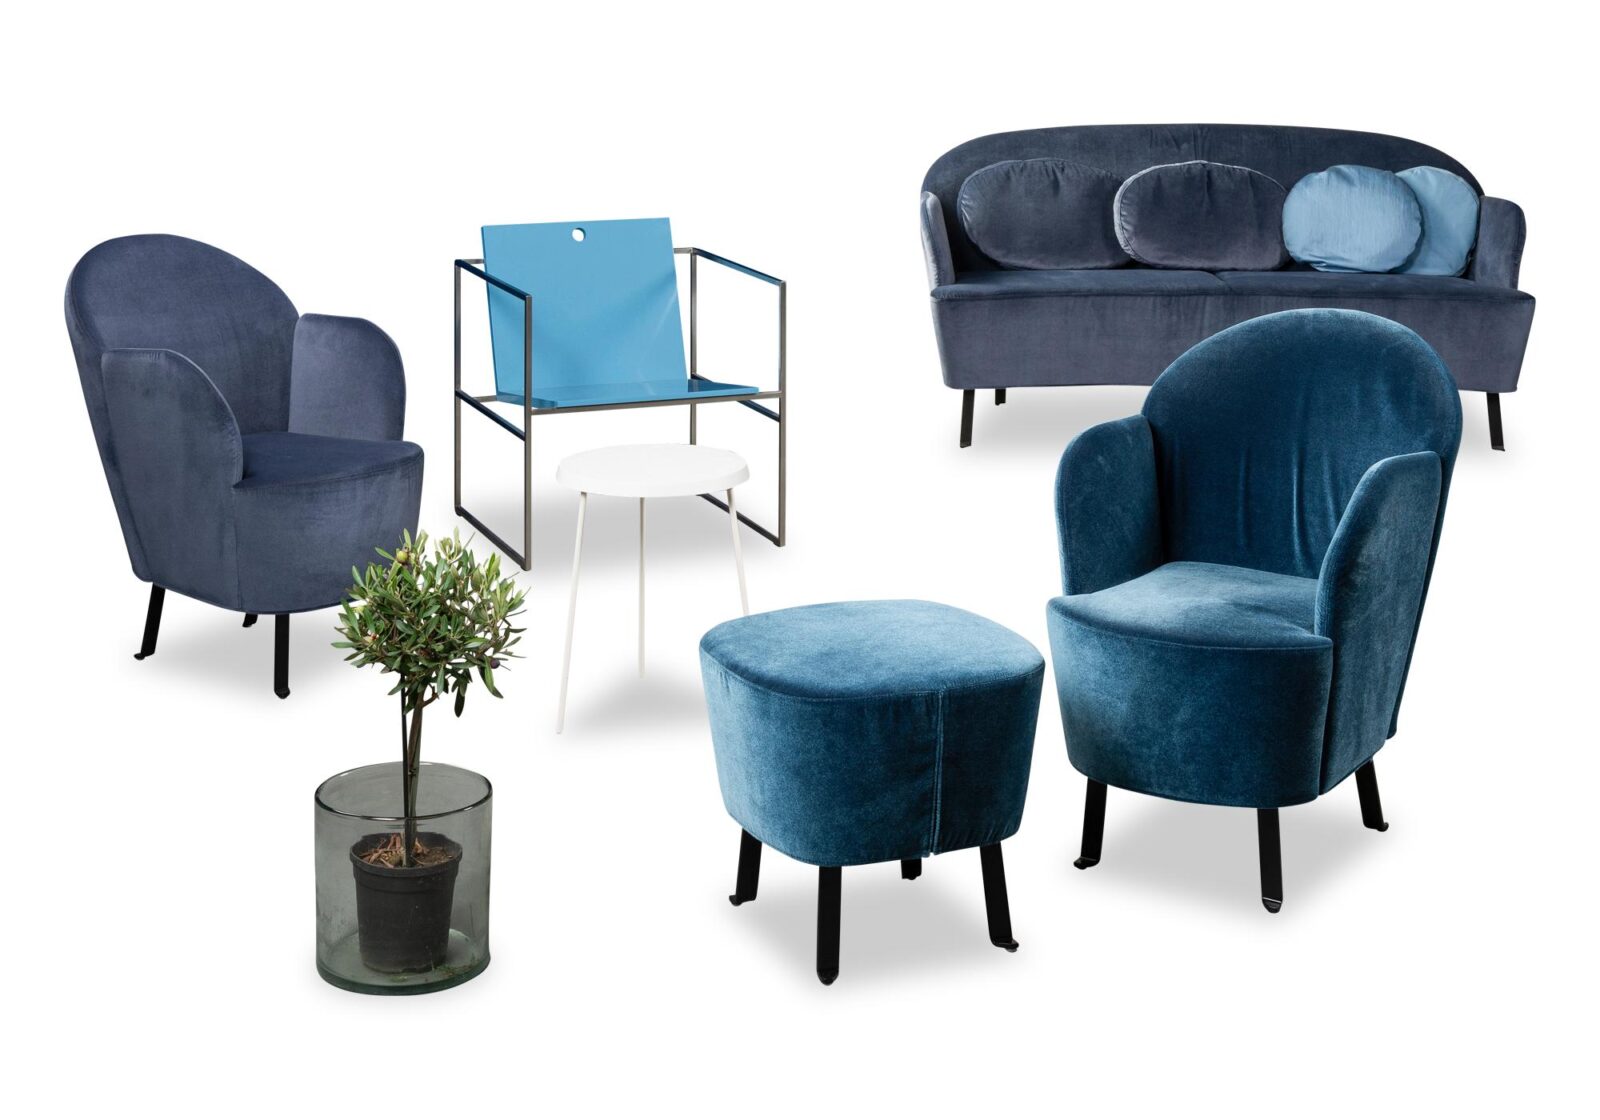 Sessel Floret mit Armlehnen. Bezug: Stoff. Farbe: Pazifikblau. Erhältlich bei Möbel Gallati.